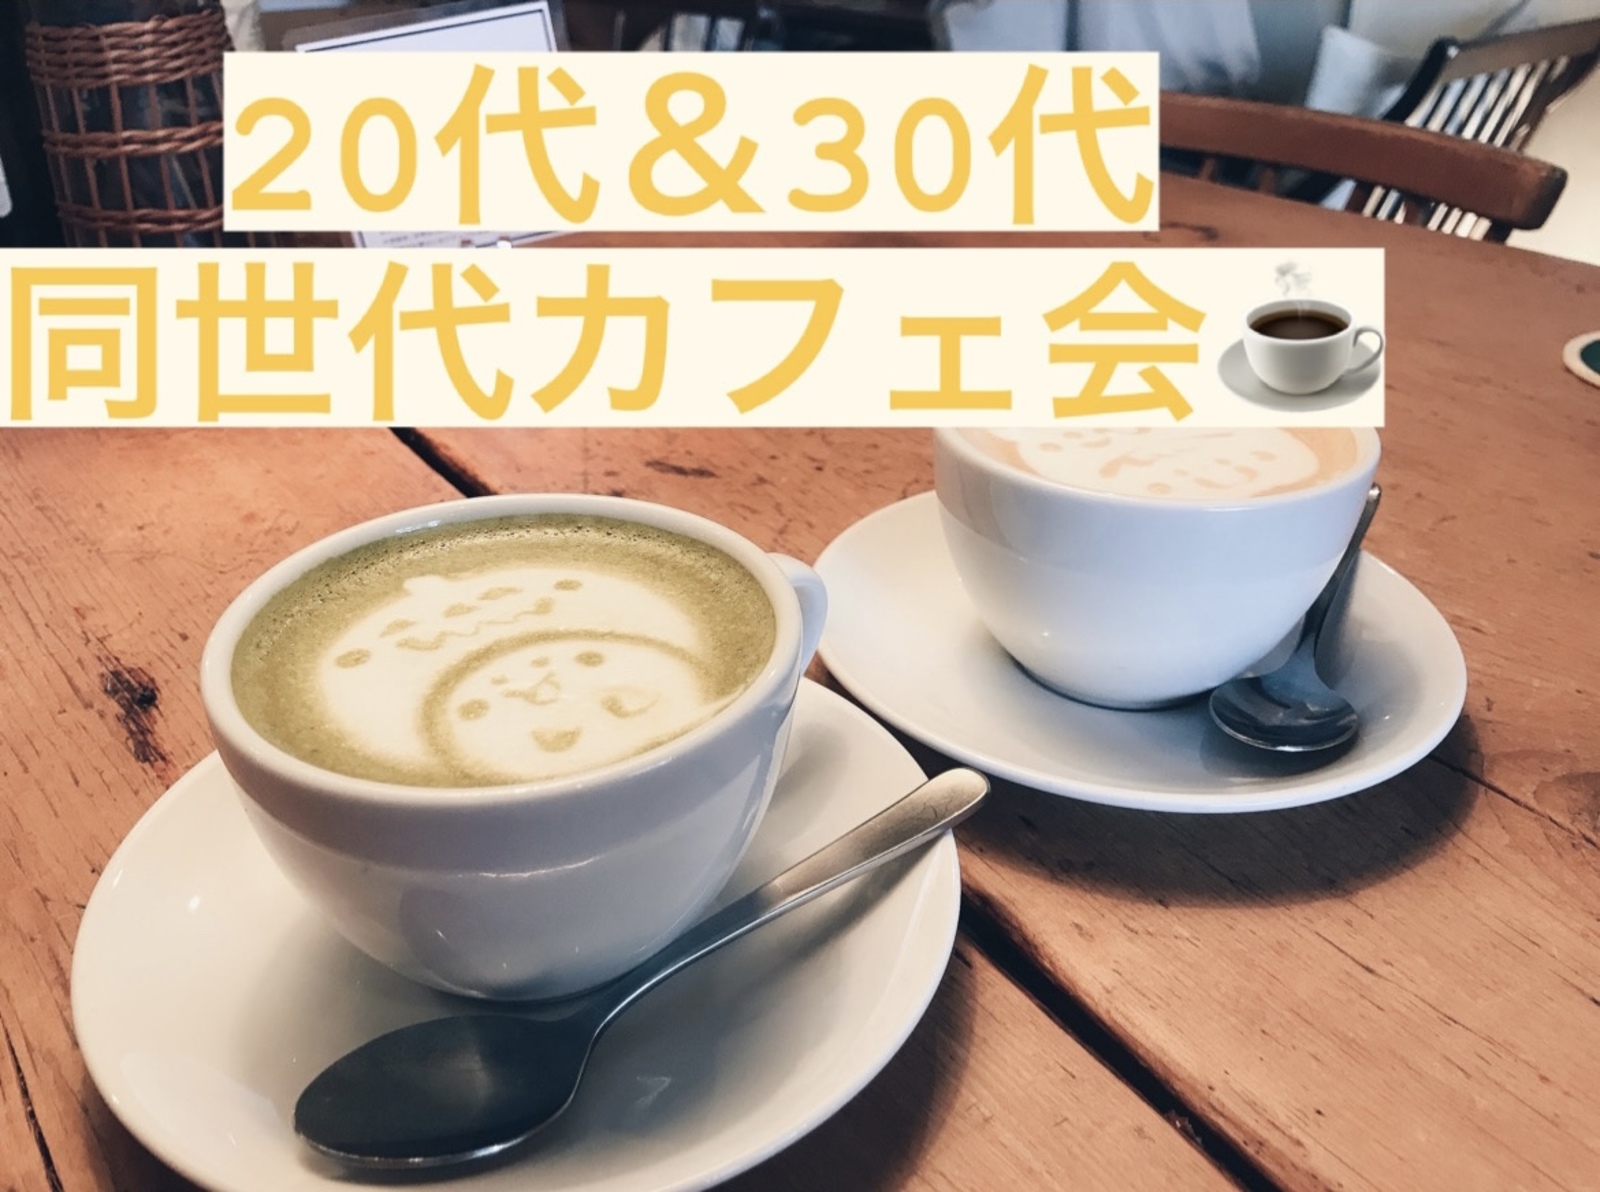 【新宿カフェ会】20代&30代同年代カフェ会